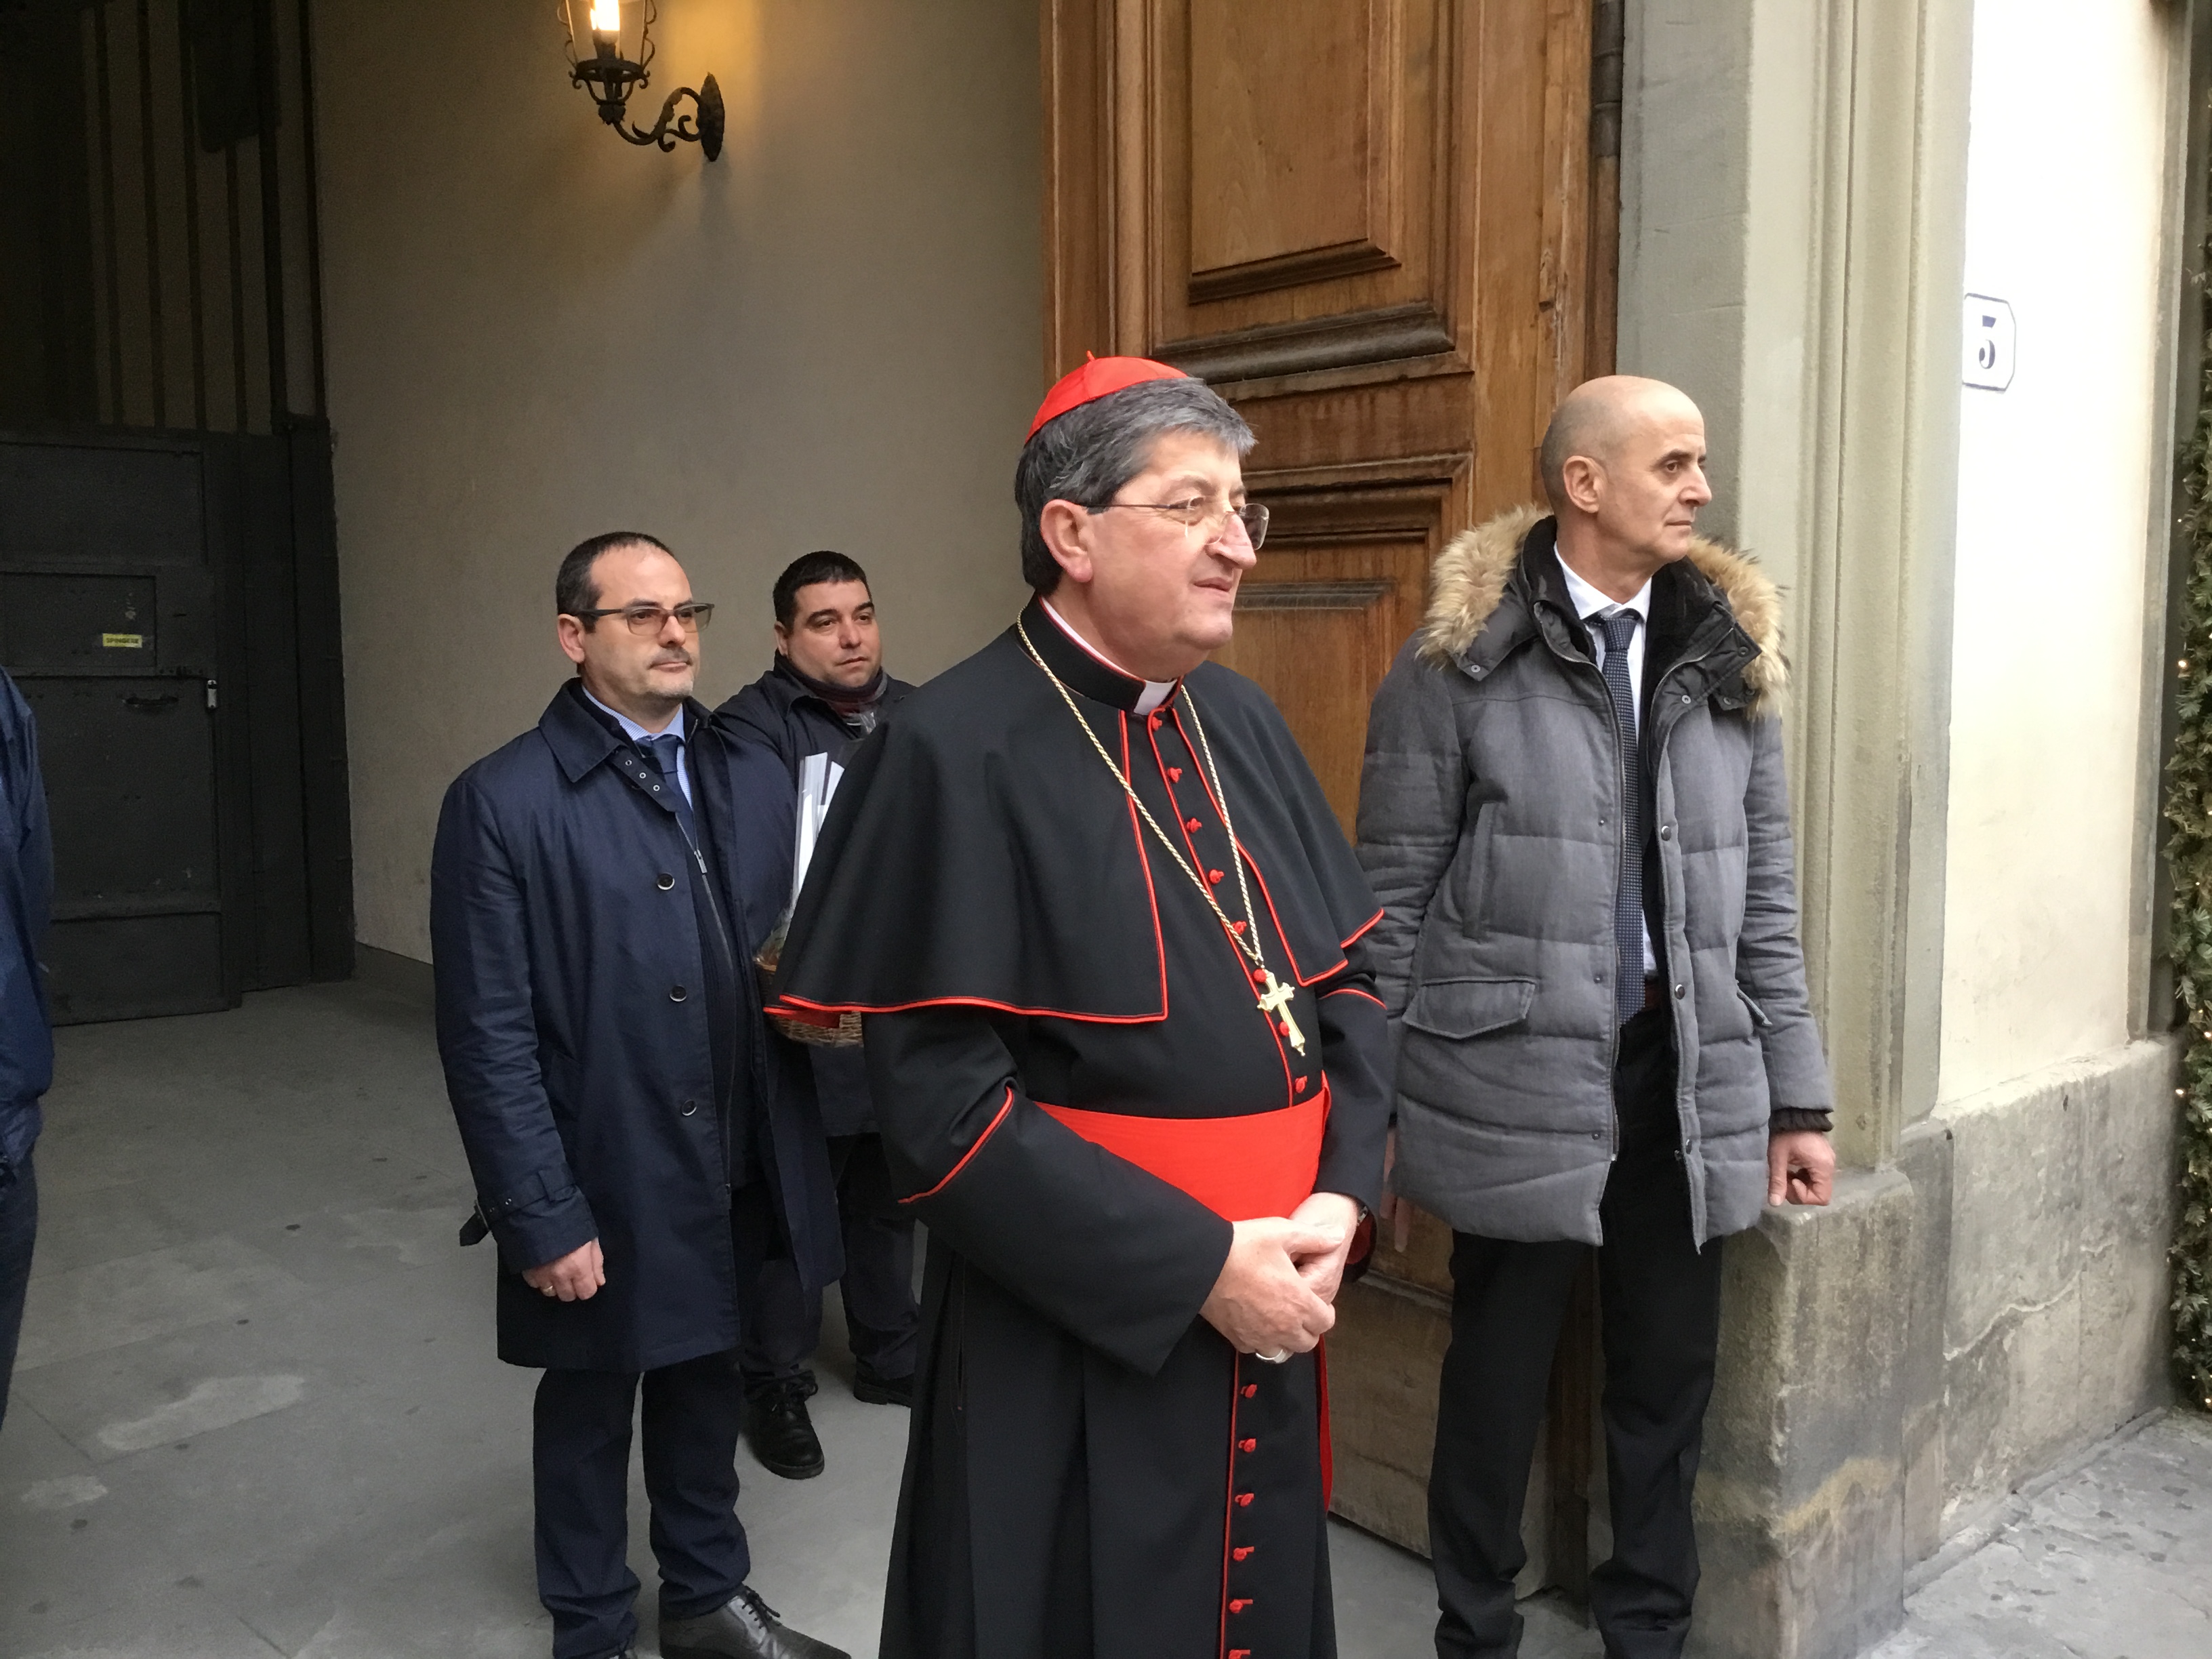 Corteo storico auguri Natale 2019 – Foto Giornalista Franco Mariani (1)